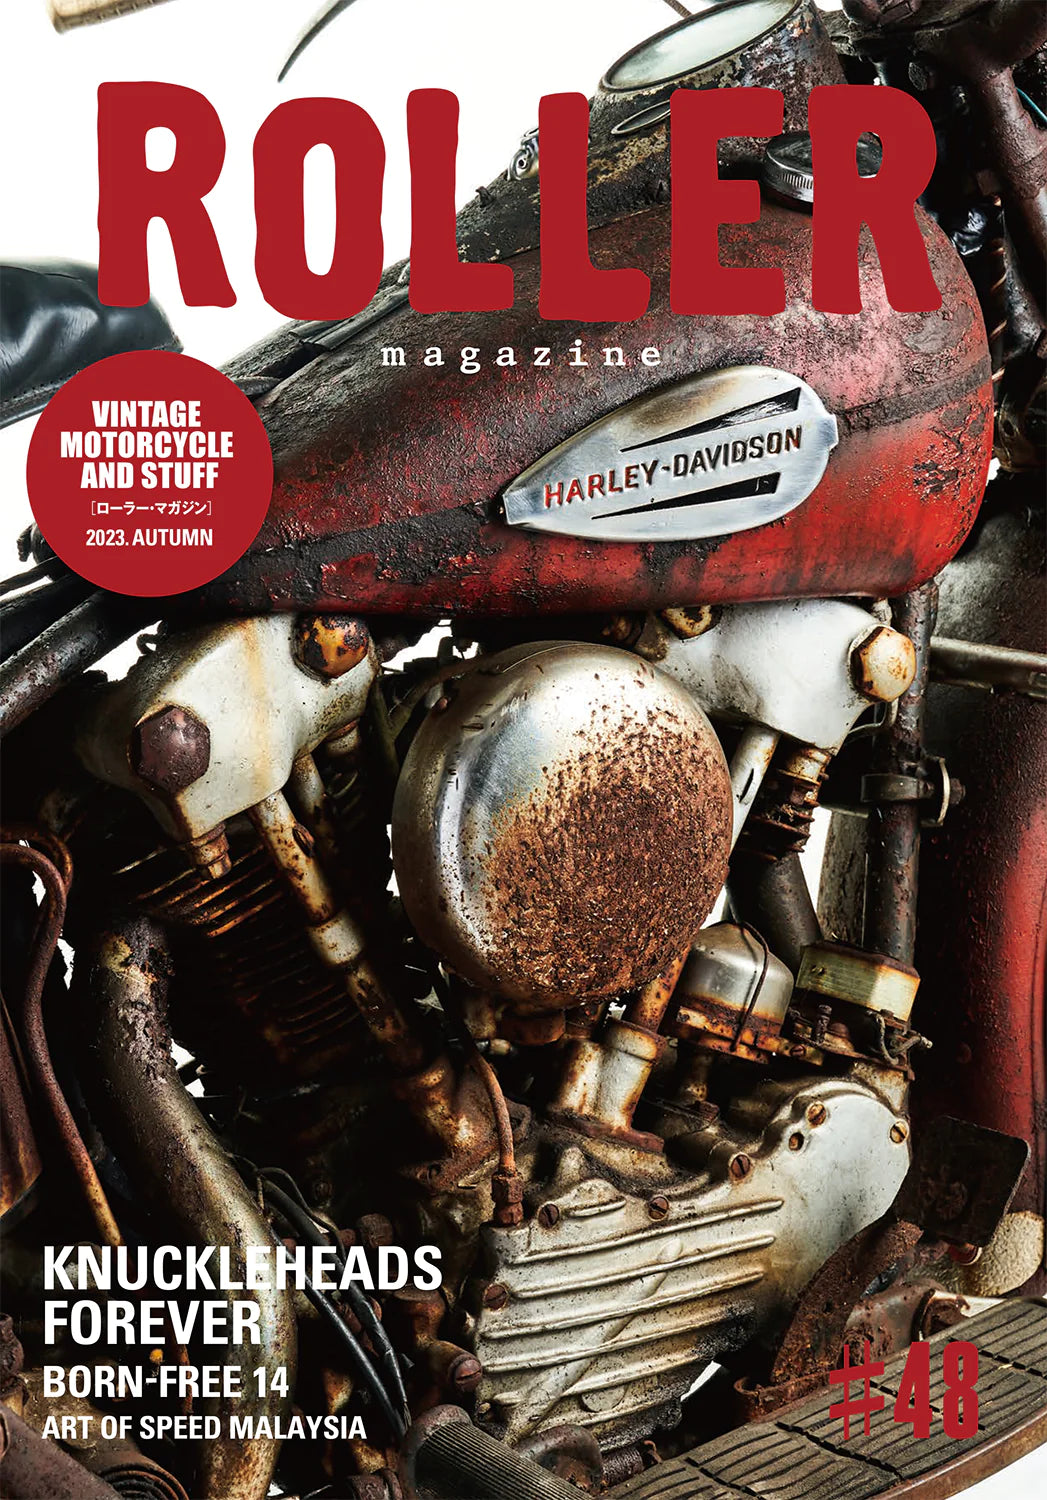 Roller Magazine issue 48